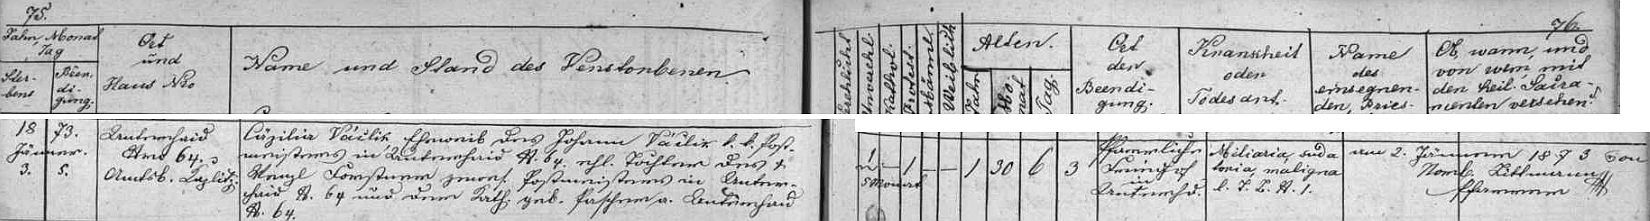 Záznam v knize zemřelých farní obce Dolní Dvořiště o úmrtí prvé otcovy ženy Cäzilie 3. ledna roku 1873 (její dívčí jméno je tu psáno Forstner namísto Forster)